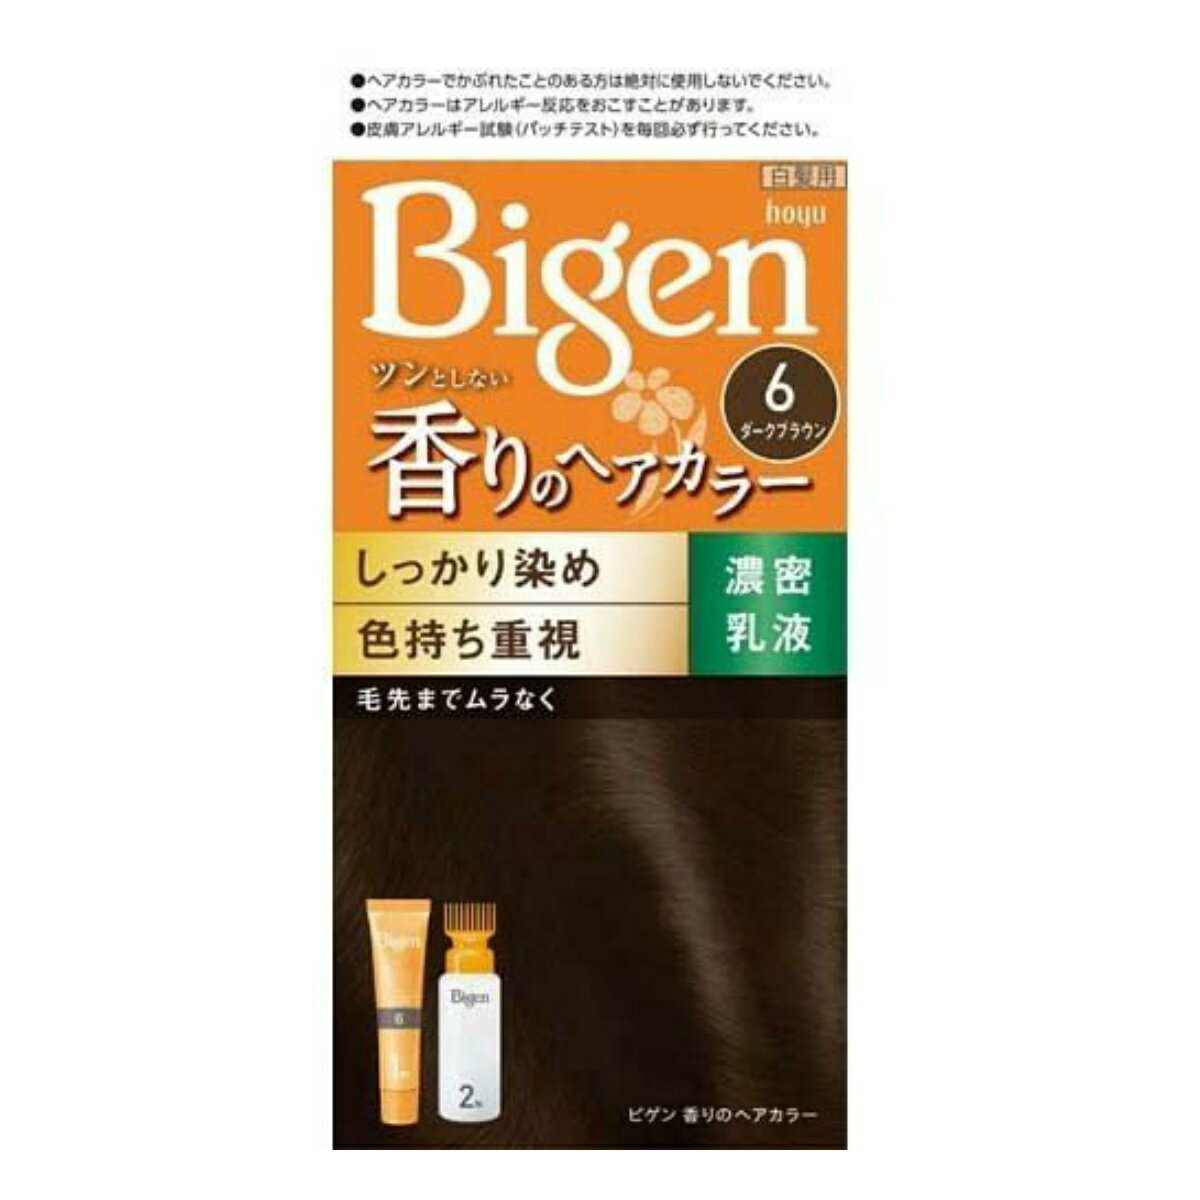 ホーユー ビゲン 香りのヘアカラー 乳液 6ダークブラウン(1セット)